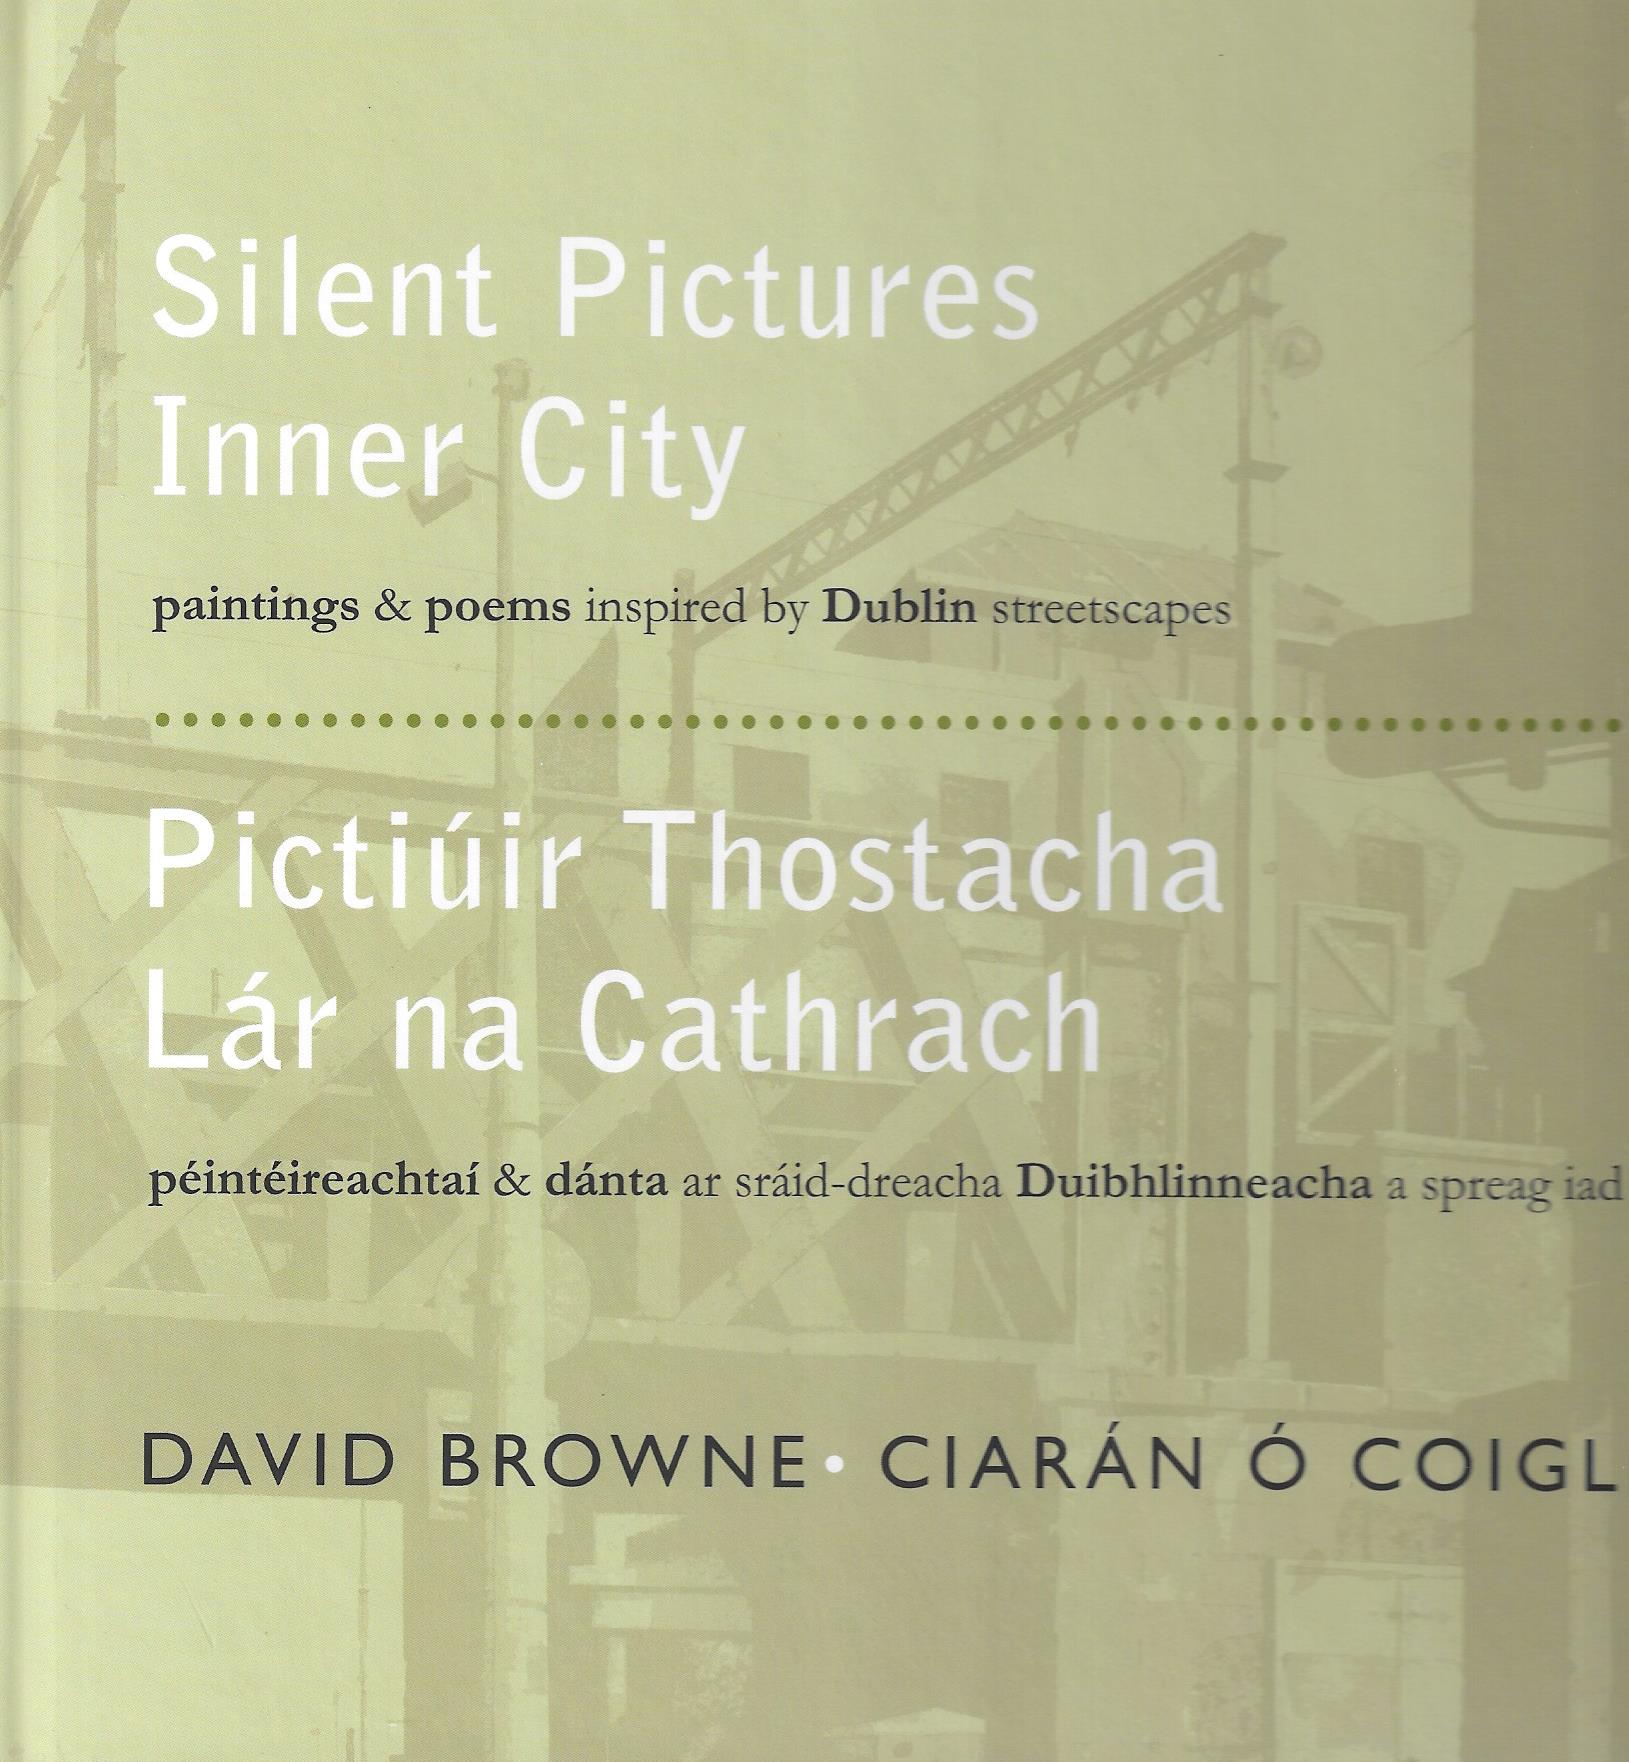 Silent Pictures Inner City / Pictiúir Thostacha Lár na Cathrach